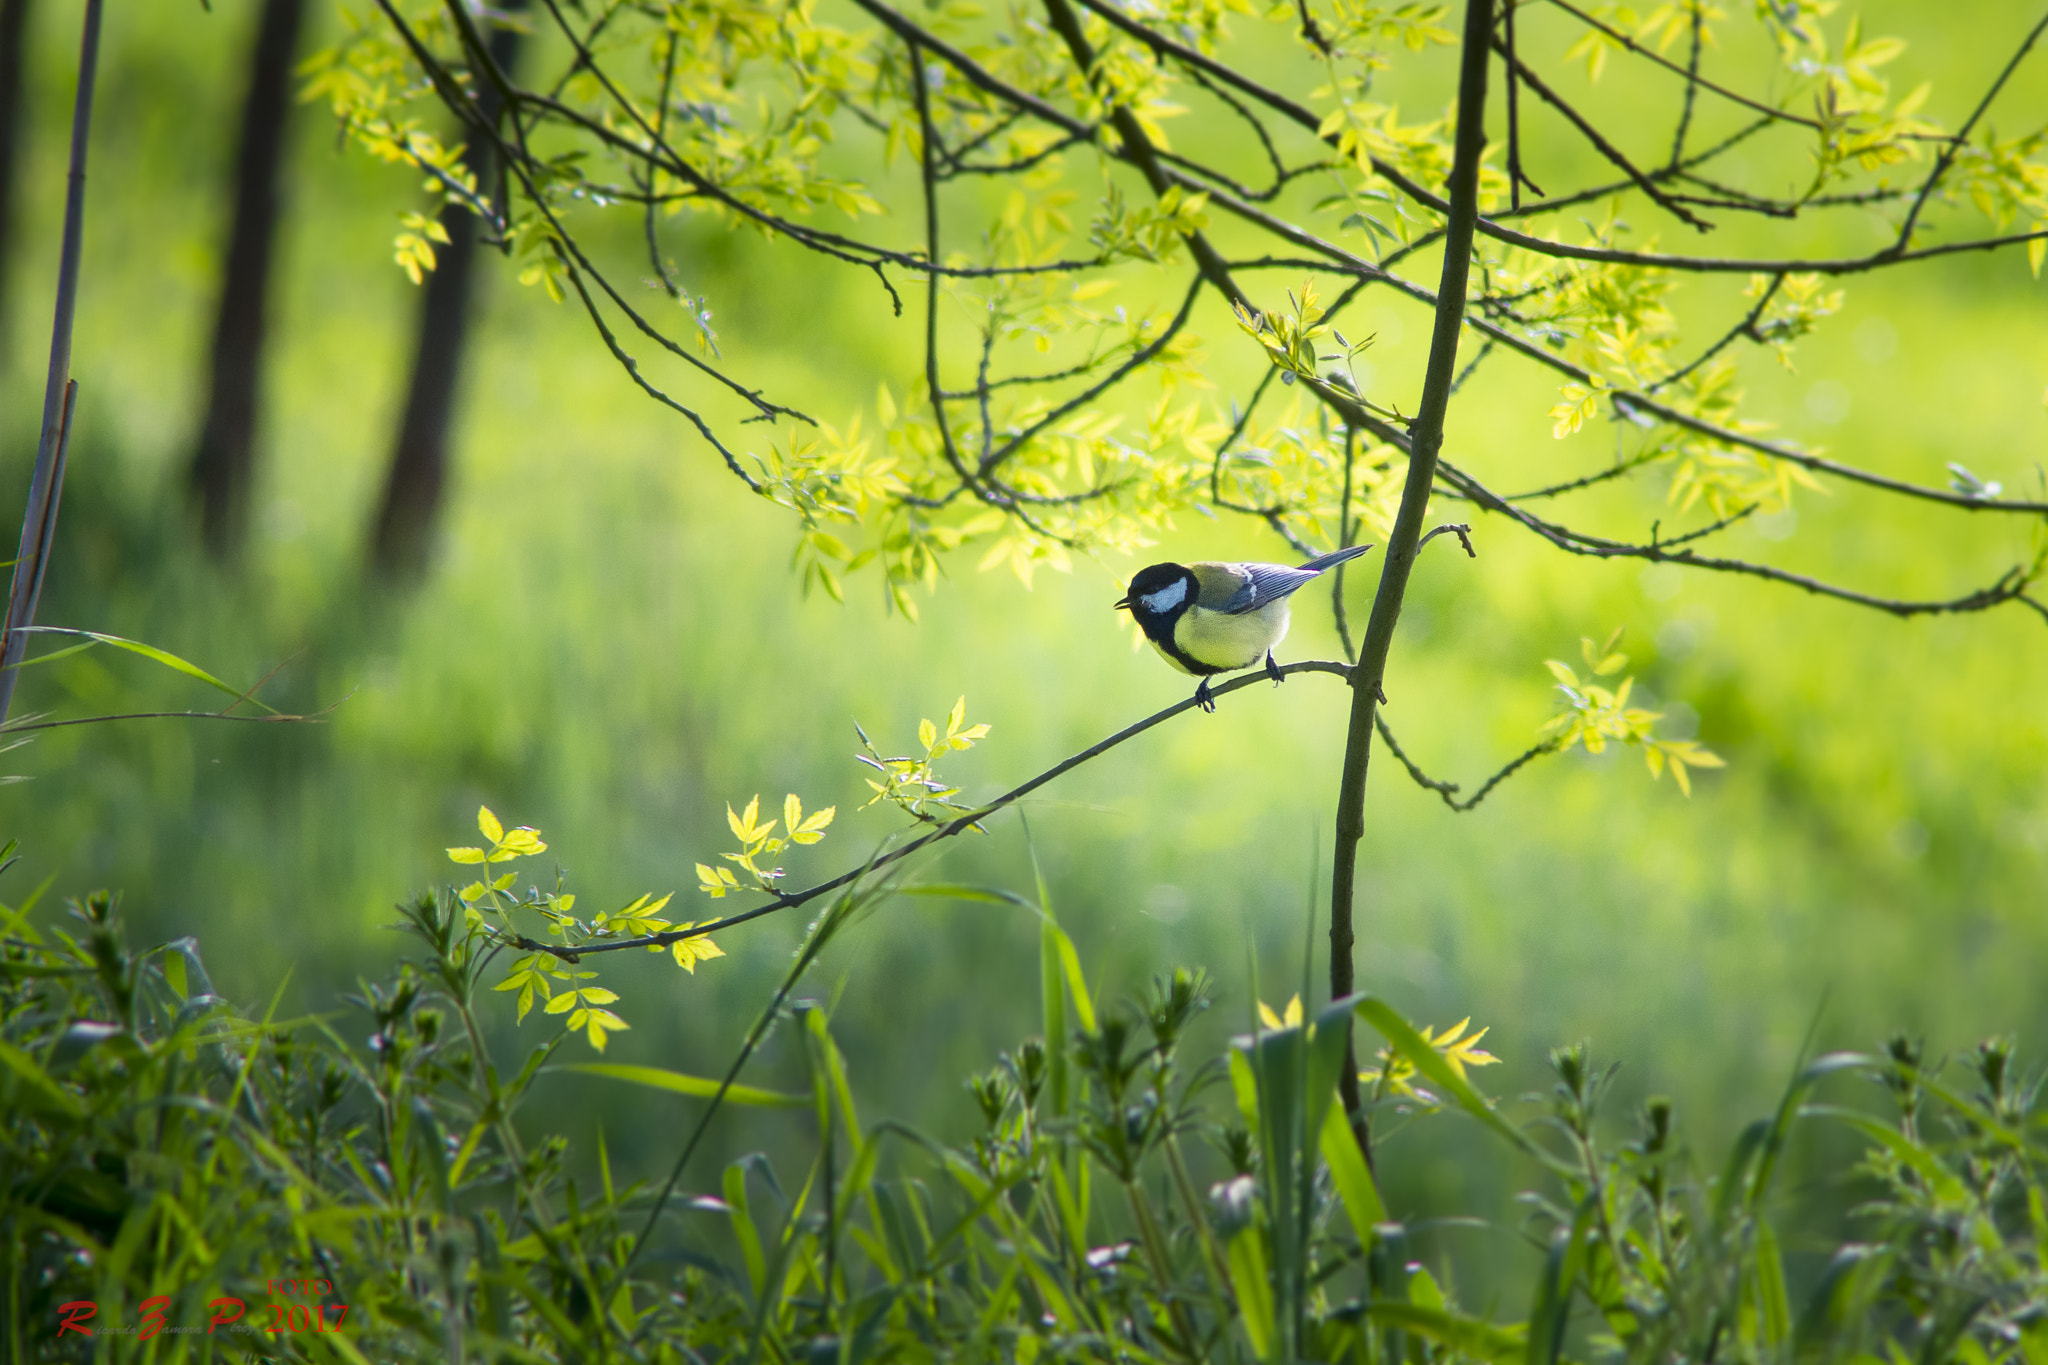 Sony SLT-A77 sample photo. Bird spring photography